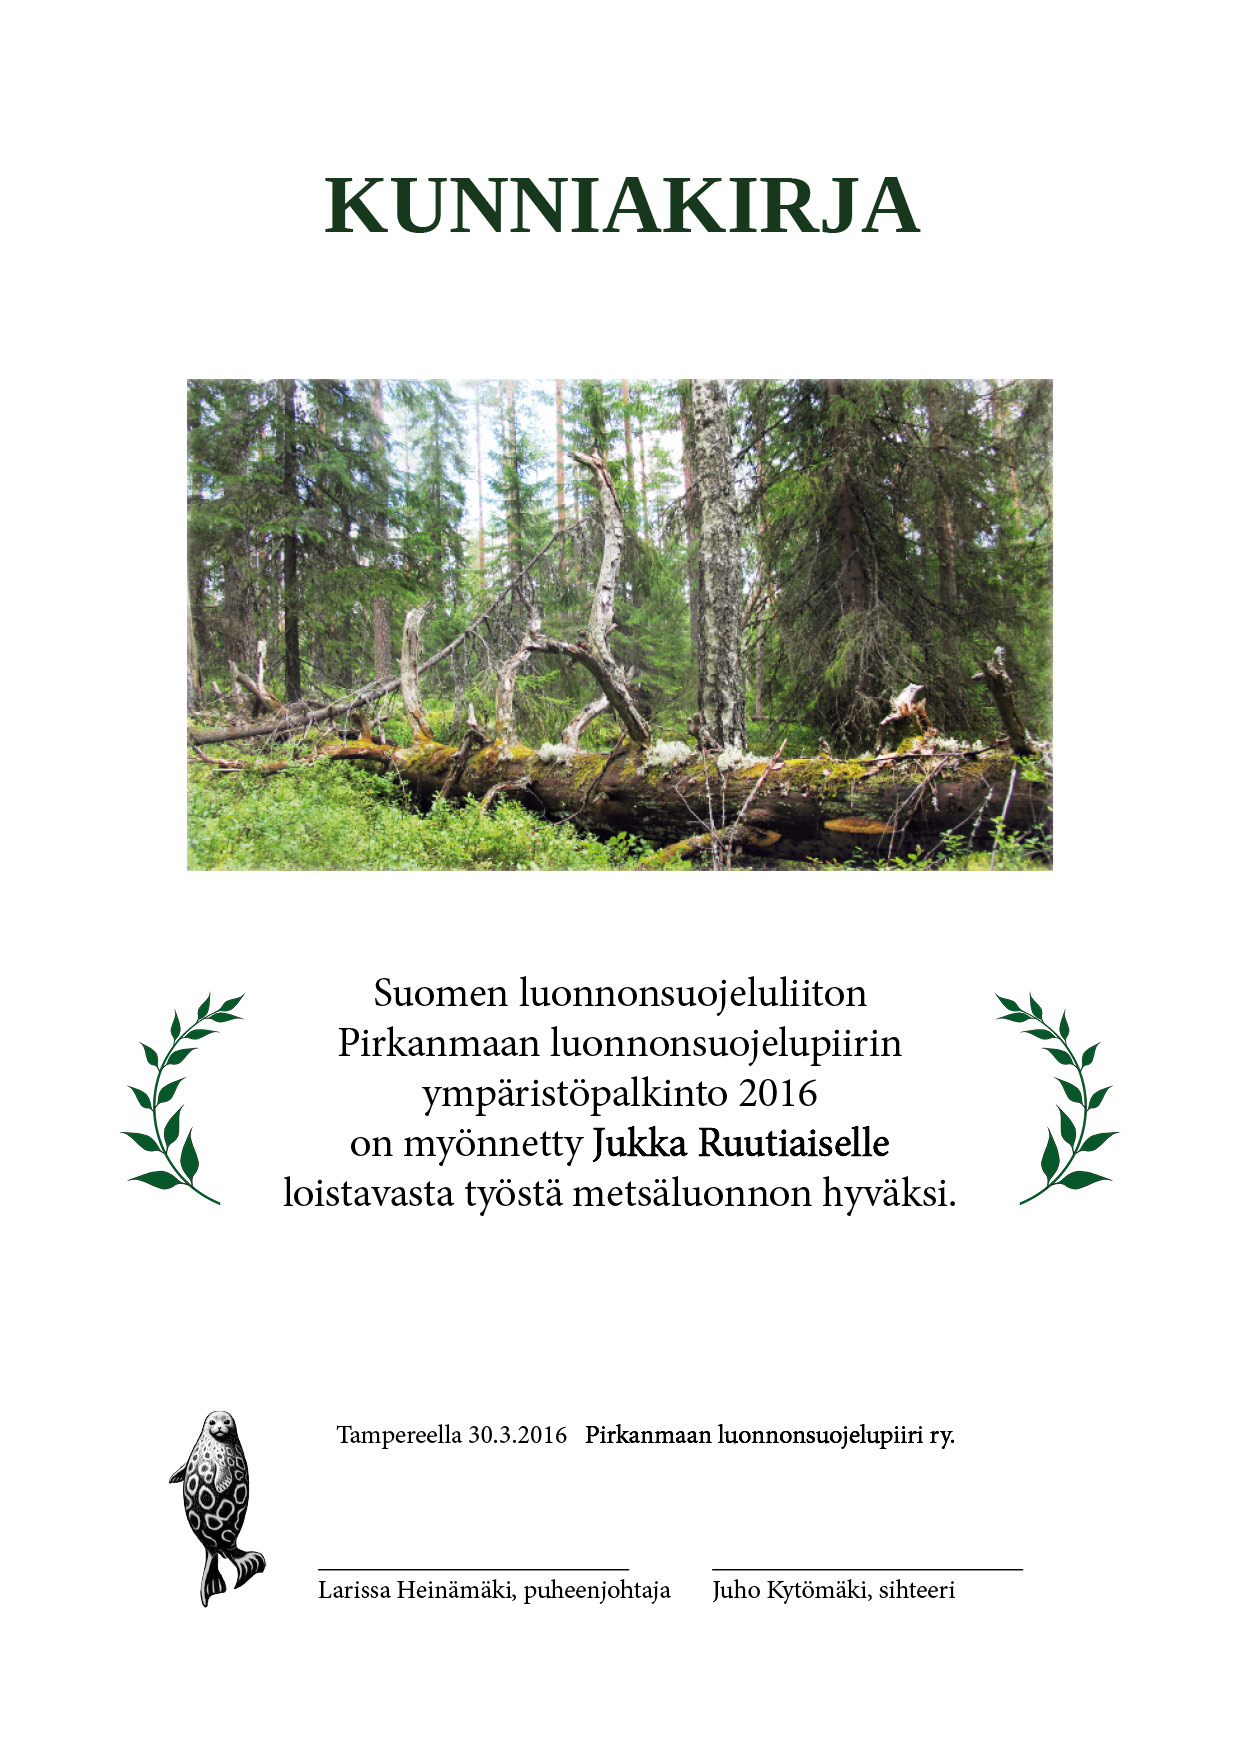 Ympäristöpalkinto Jukka Ruutiaiselle metsäluonnon hyväksi tehdystä työstä